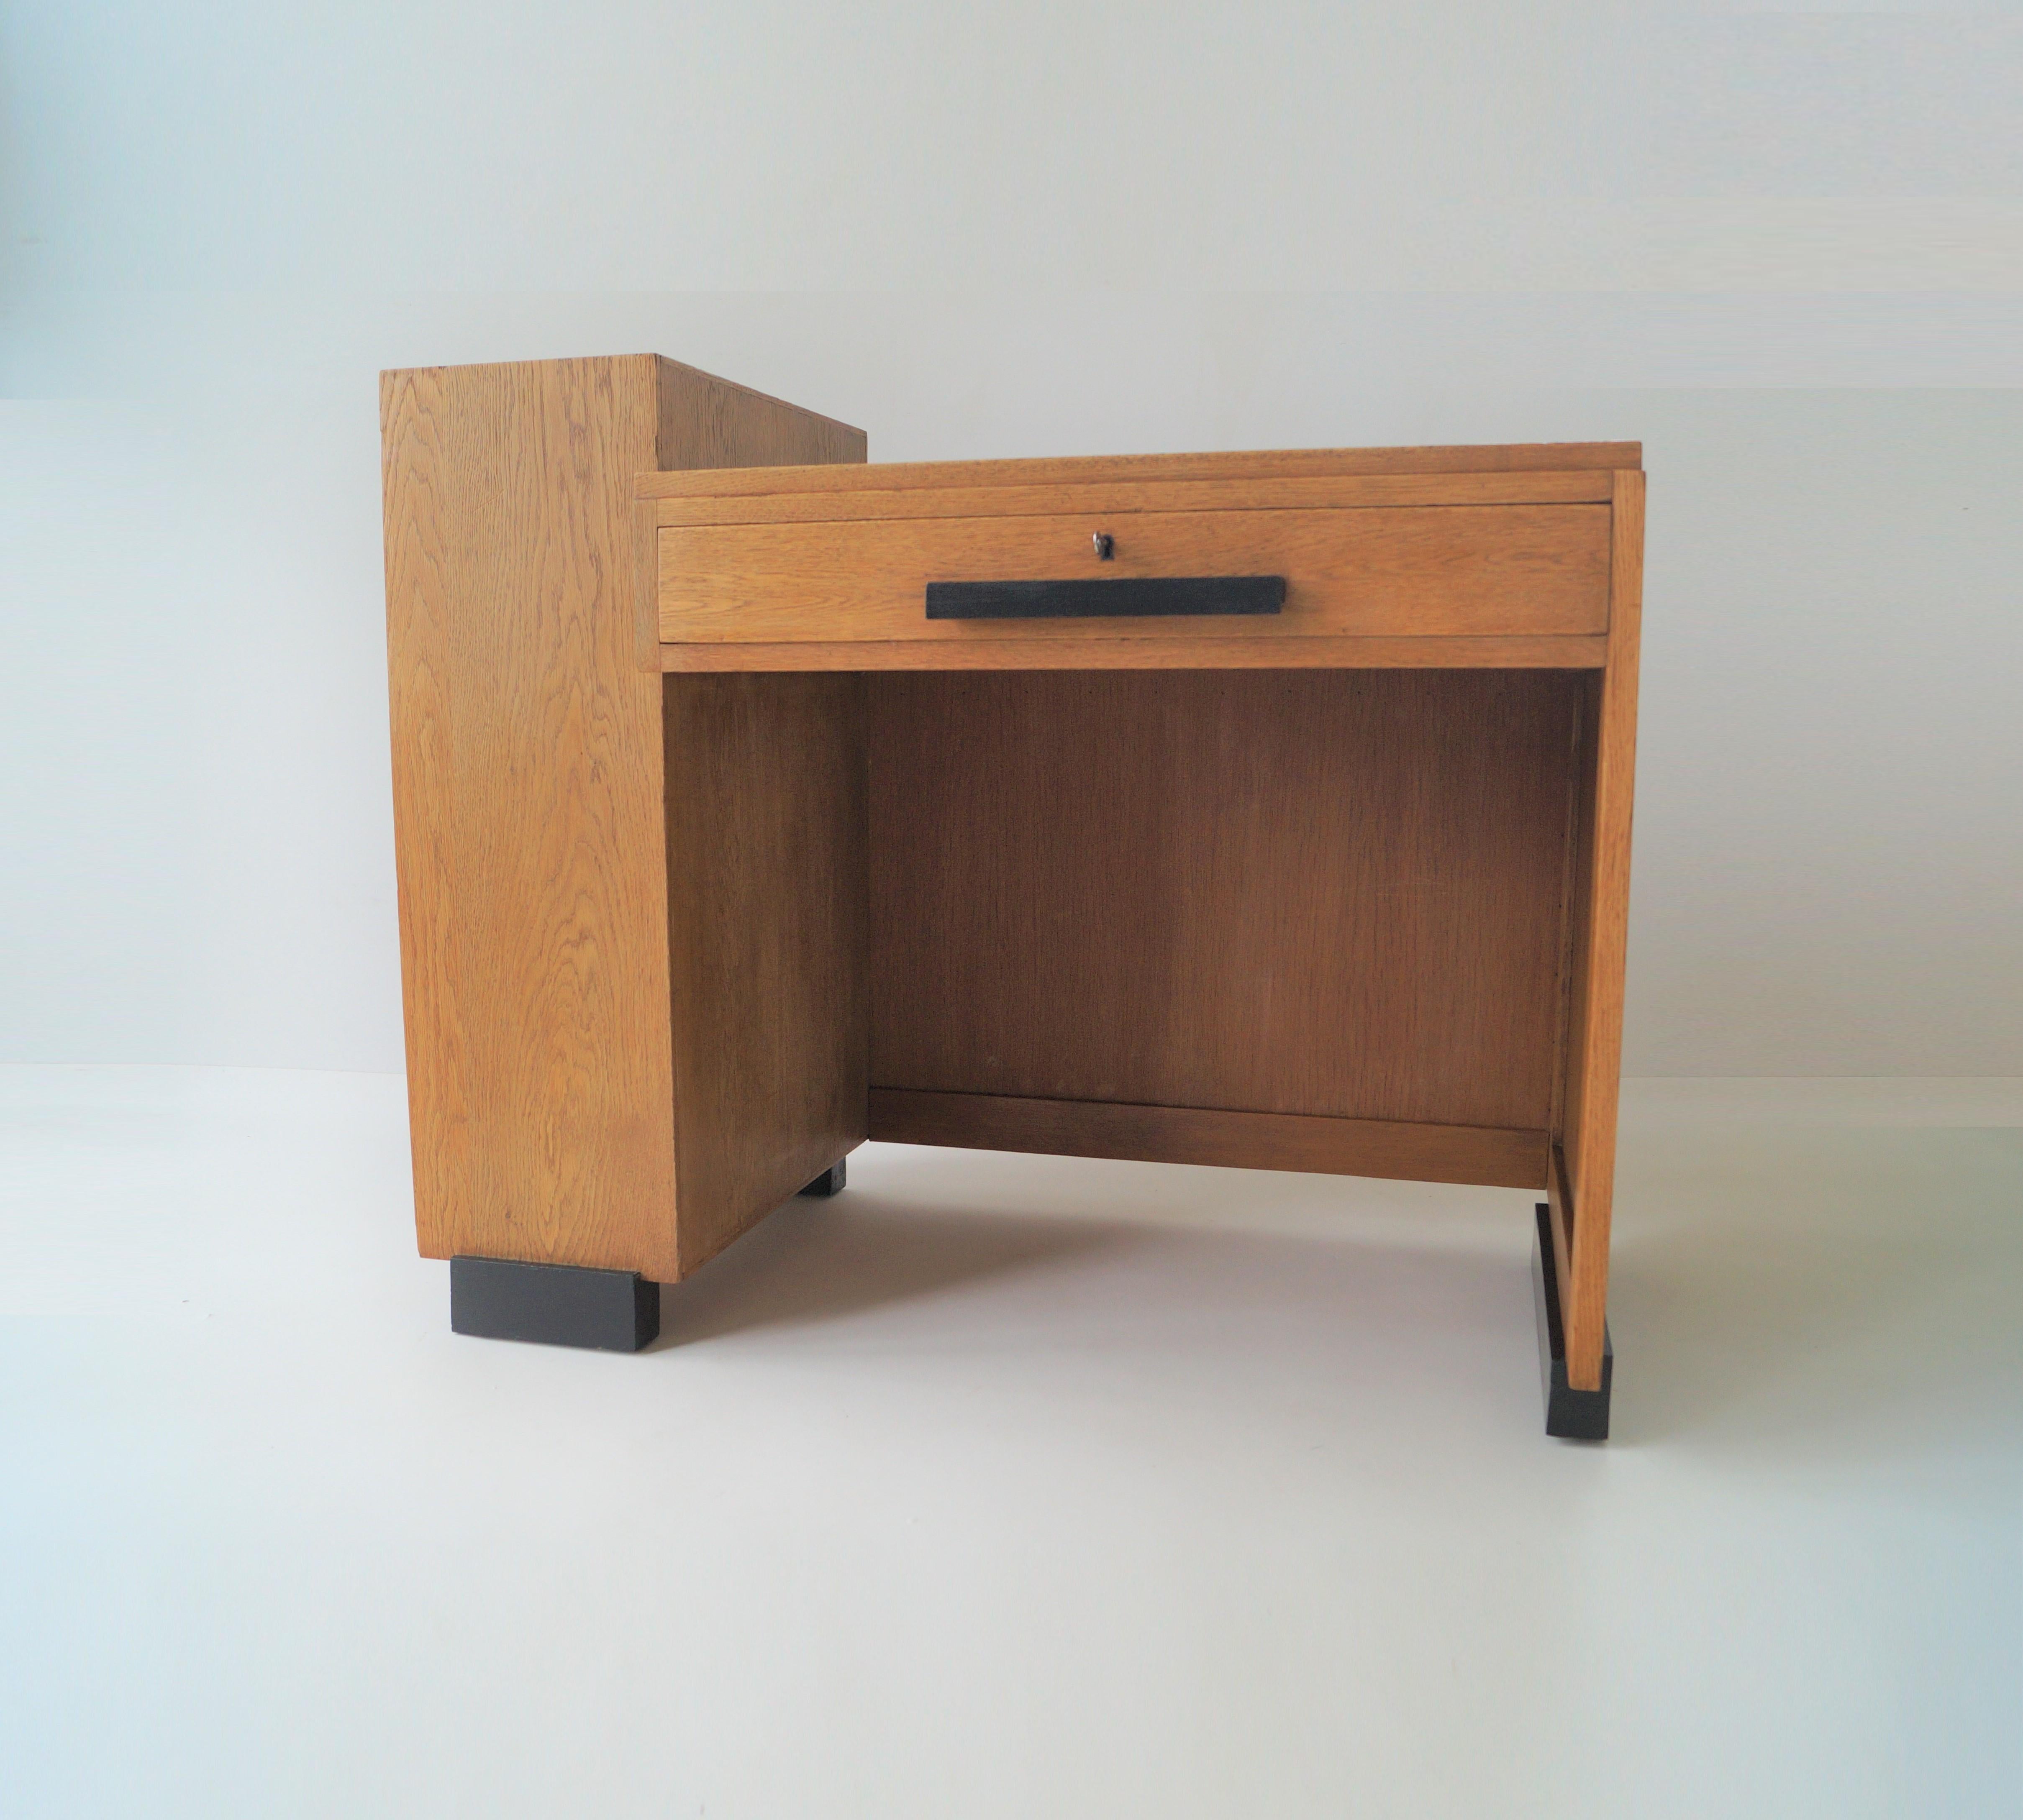 Un bureau moderniste de taille modeste avec un design assymétrique, lui donnant un aspect de l'école de Haagse/moderniste.

Il comporte un grand tiroir à l'avant et un compartiment de rangement à trois étagères à gauche. Sur le bureau, une